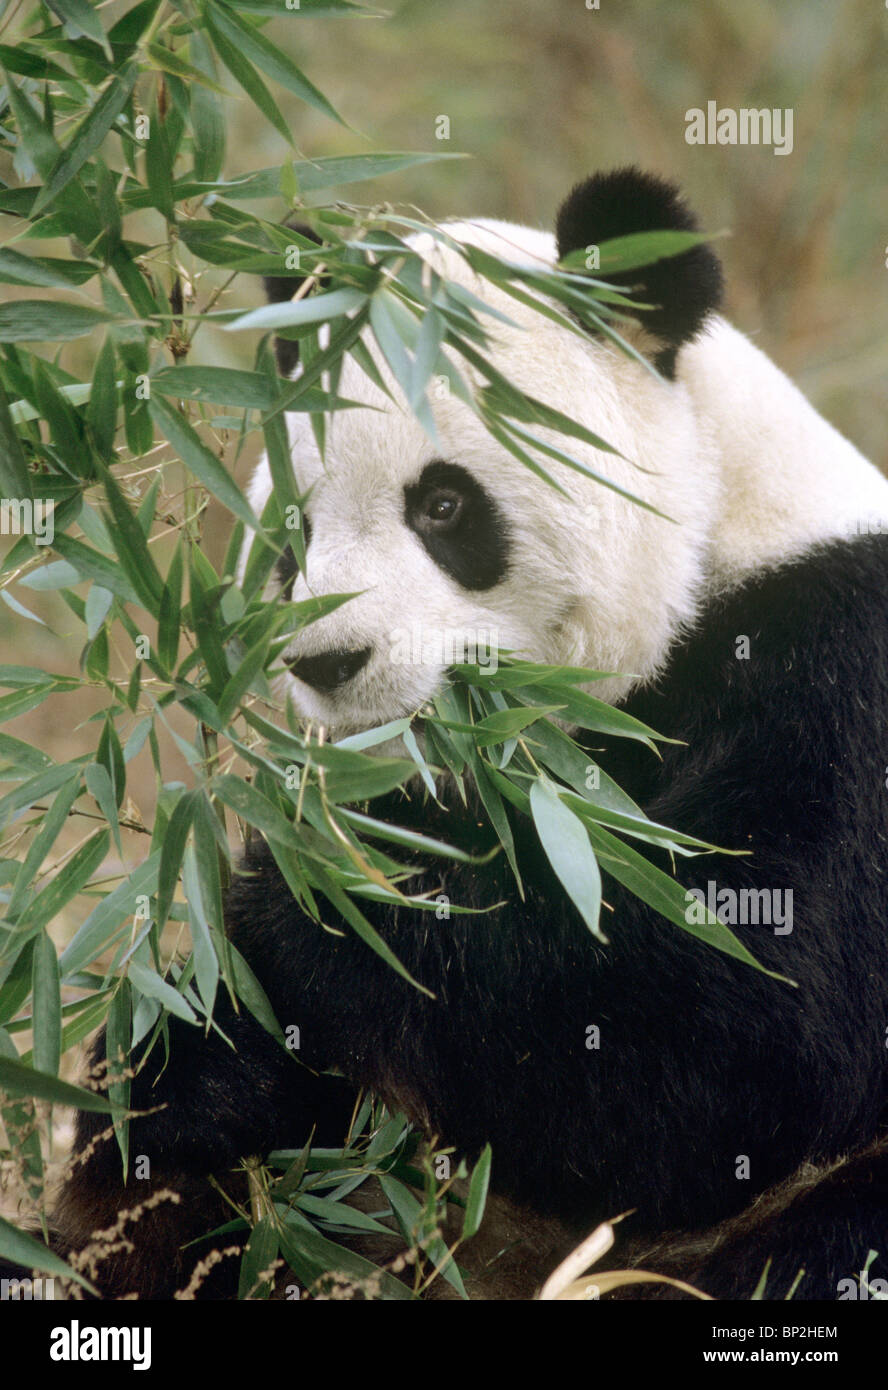 Panda gigante alimentándose de bambú, Wolong, provincia de Sichuan, China. Foto de stock